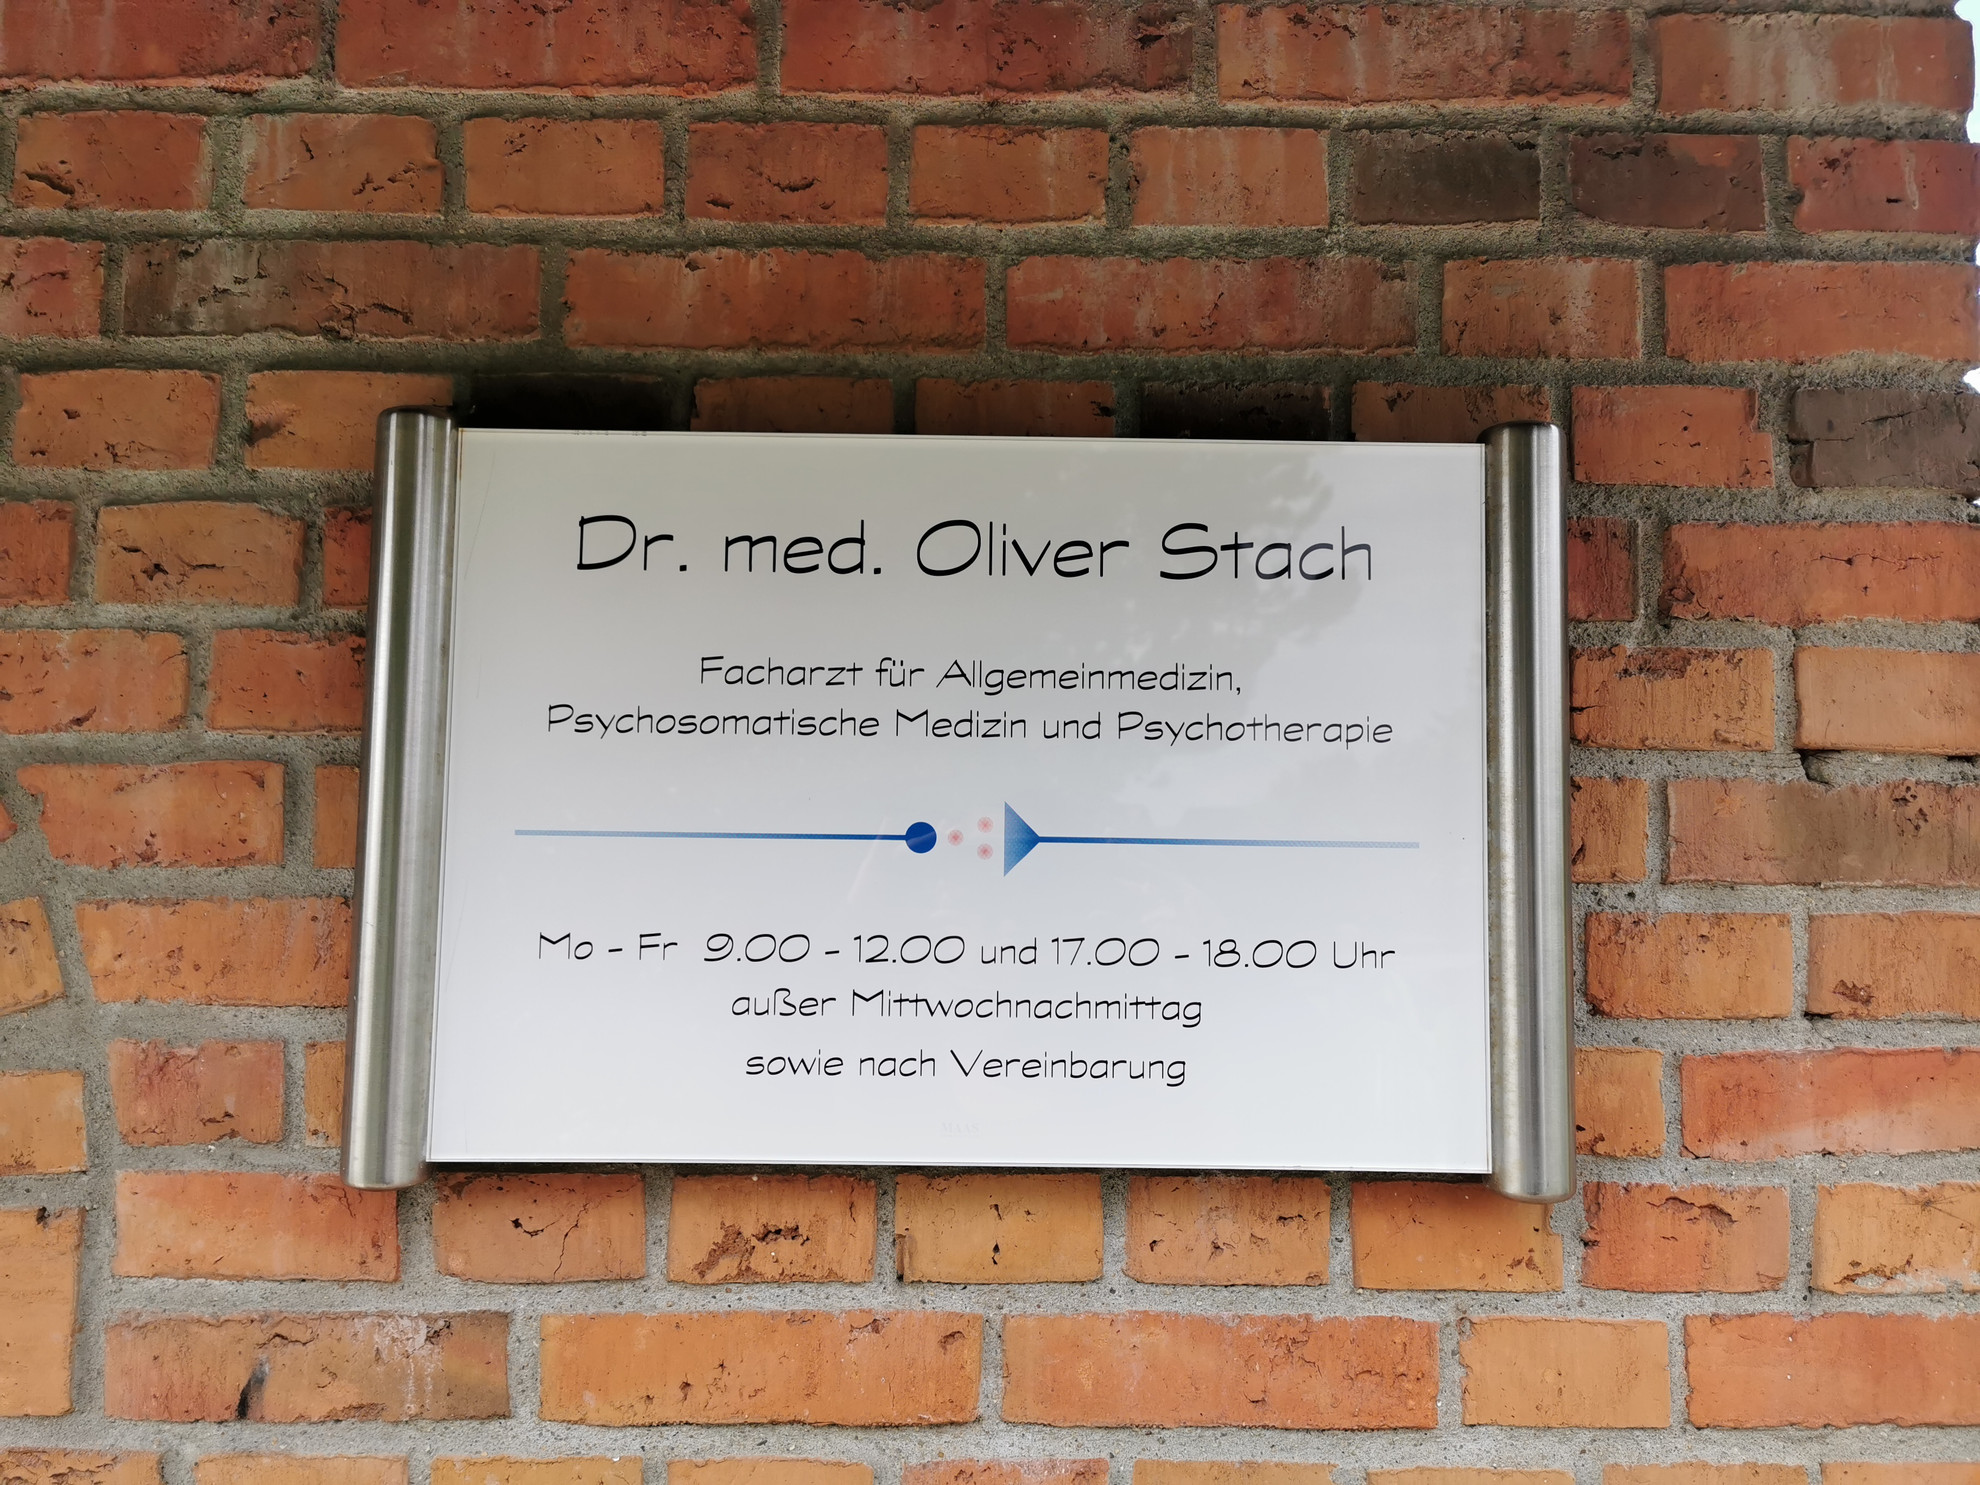 Dr. med. Oliver Stach in Kampen